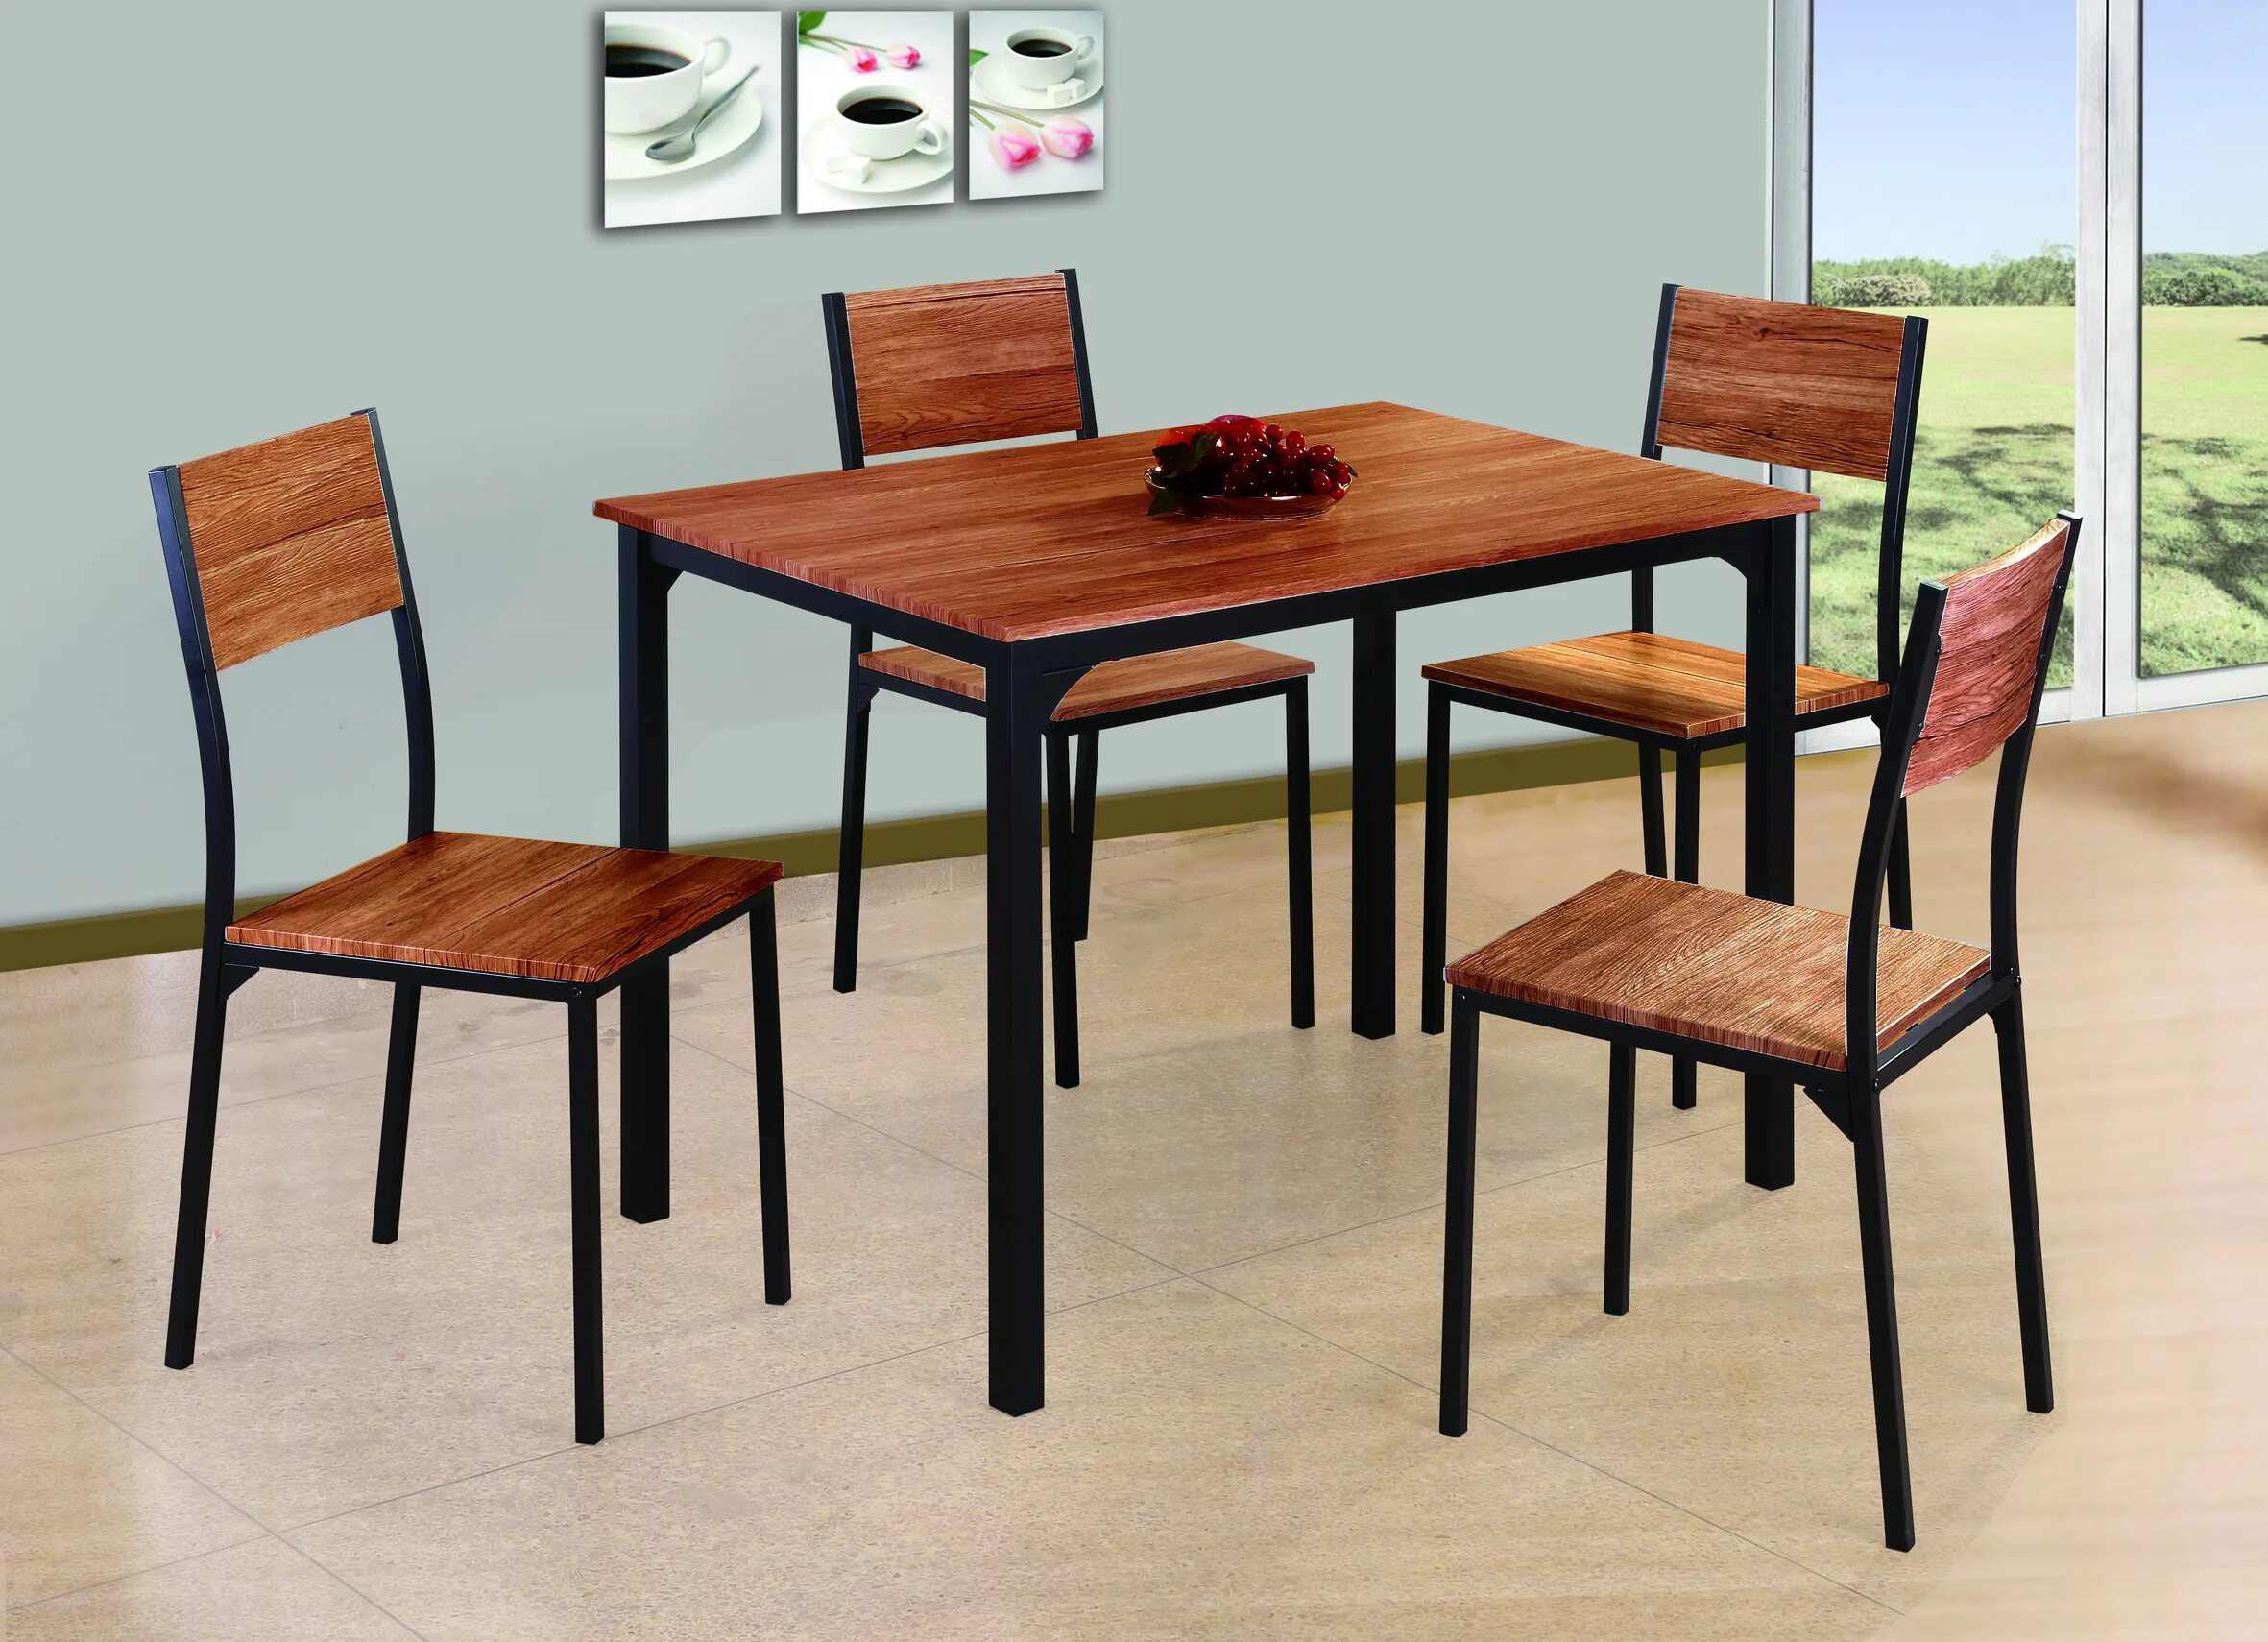 Четверо стульев. Комплект Siena: стол 100х70 и четыре стула Sonoma Oak MP-T. Комплект металлической мебели HYS-0195 стол 100 72см 4 стула. Набор мебели 5 предметов f0829 стол 100x100см 4 стула. Комплект обеденный стол и 4 стула.